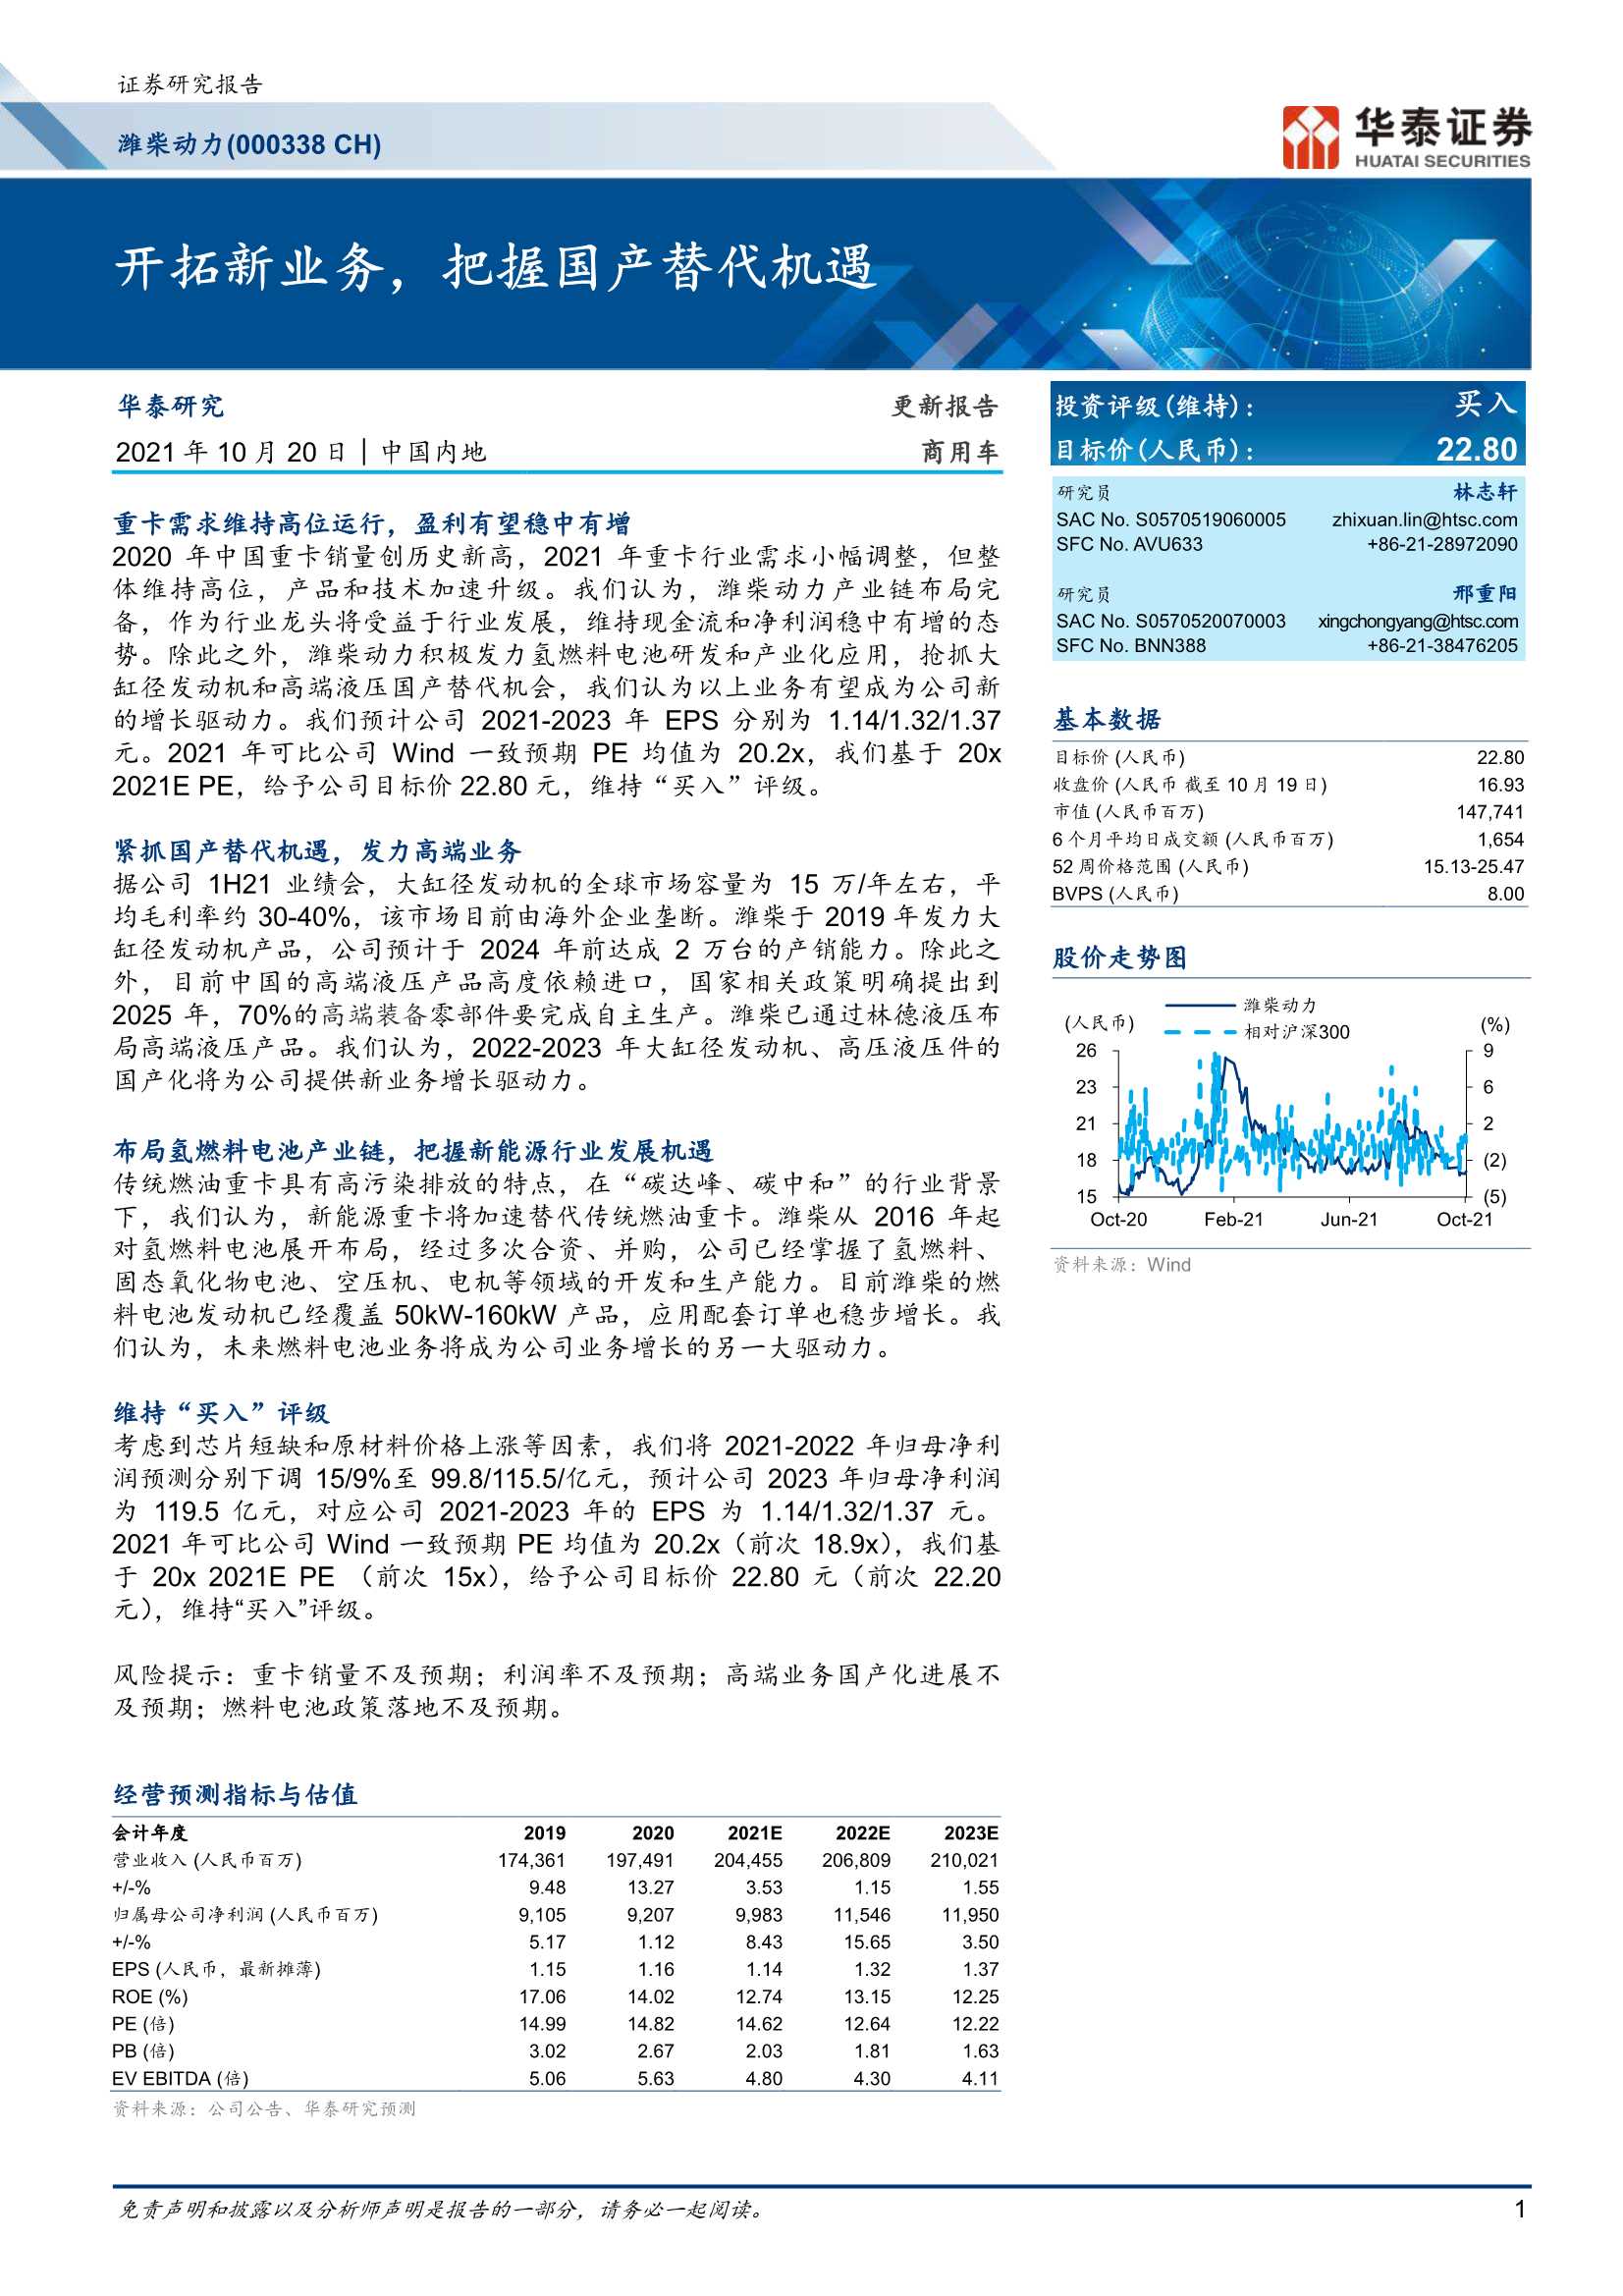 华泰证券-潍柴动力-000338-开拓新业务，把握国产替代机遇-20211020-26页